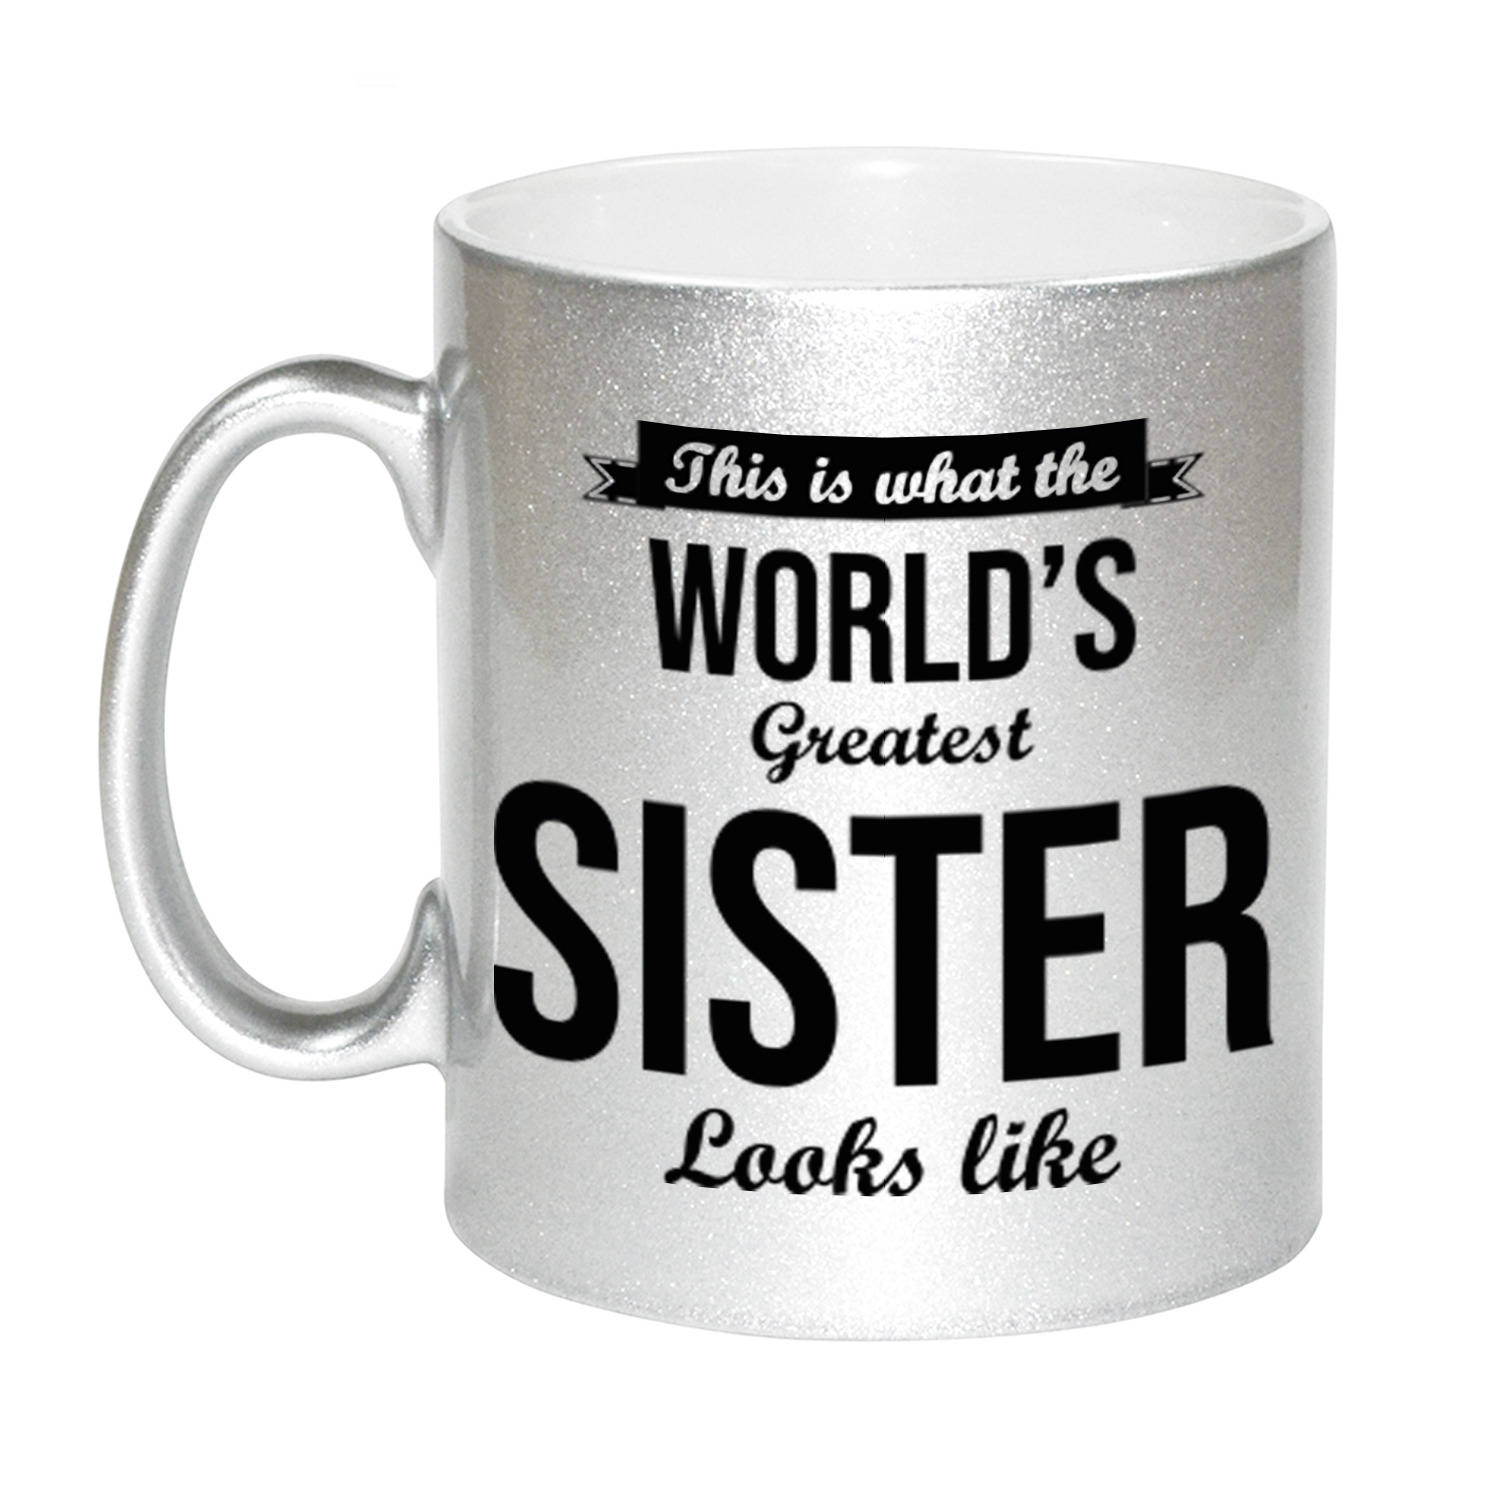 Worlds Greatest Sister cadeau mok / beker zilverglanzend 330 ml - feest mokken